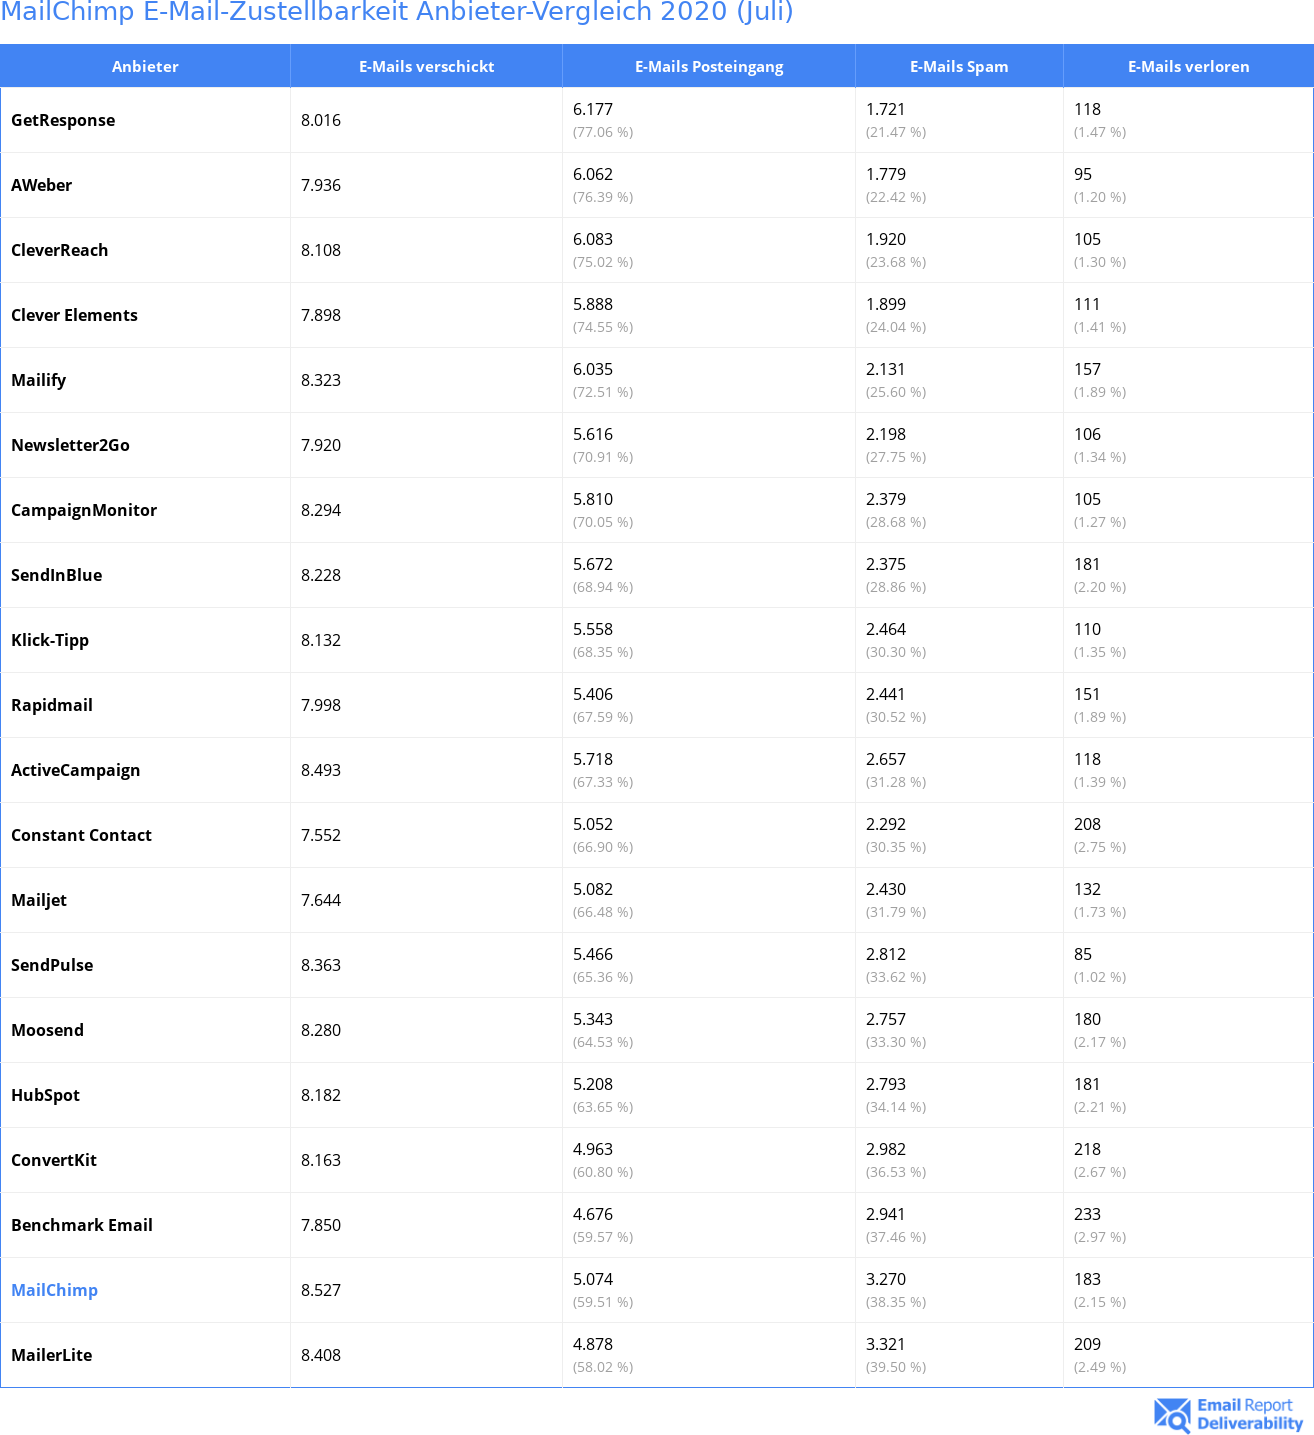 MailChimp E-Mail-Zustellbarkeit Anbieter-Vergleich 2020 (Juli)